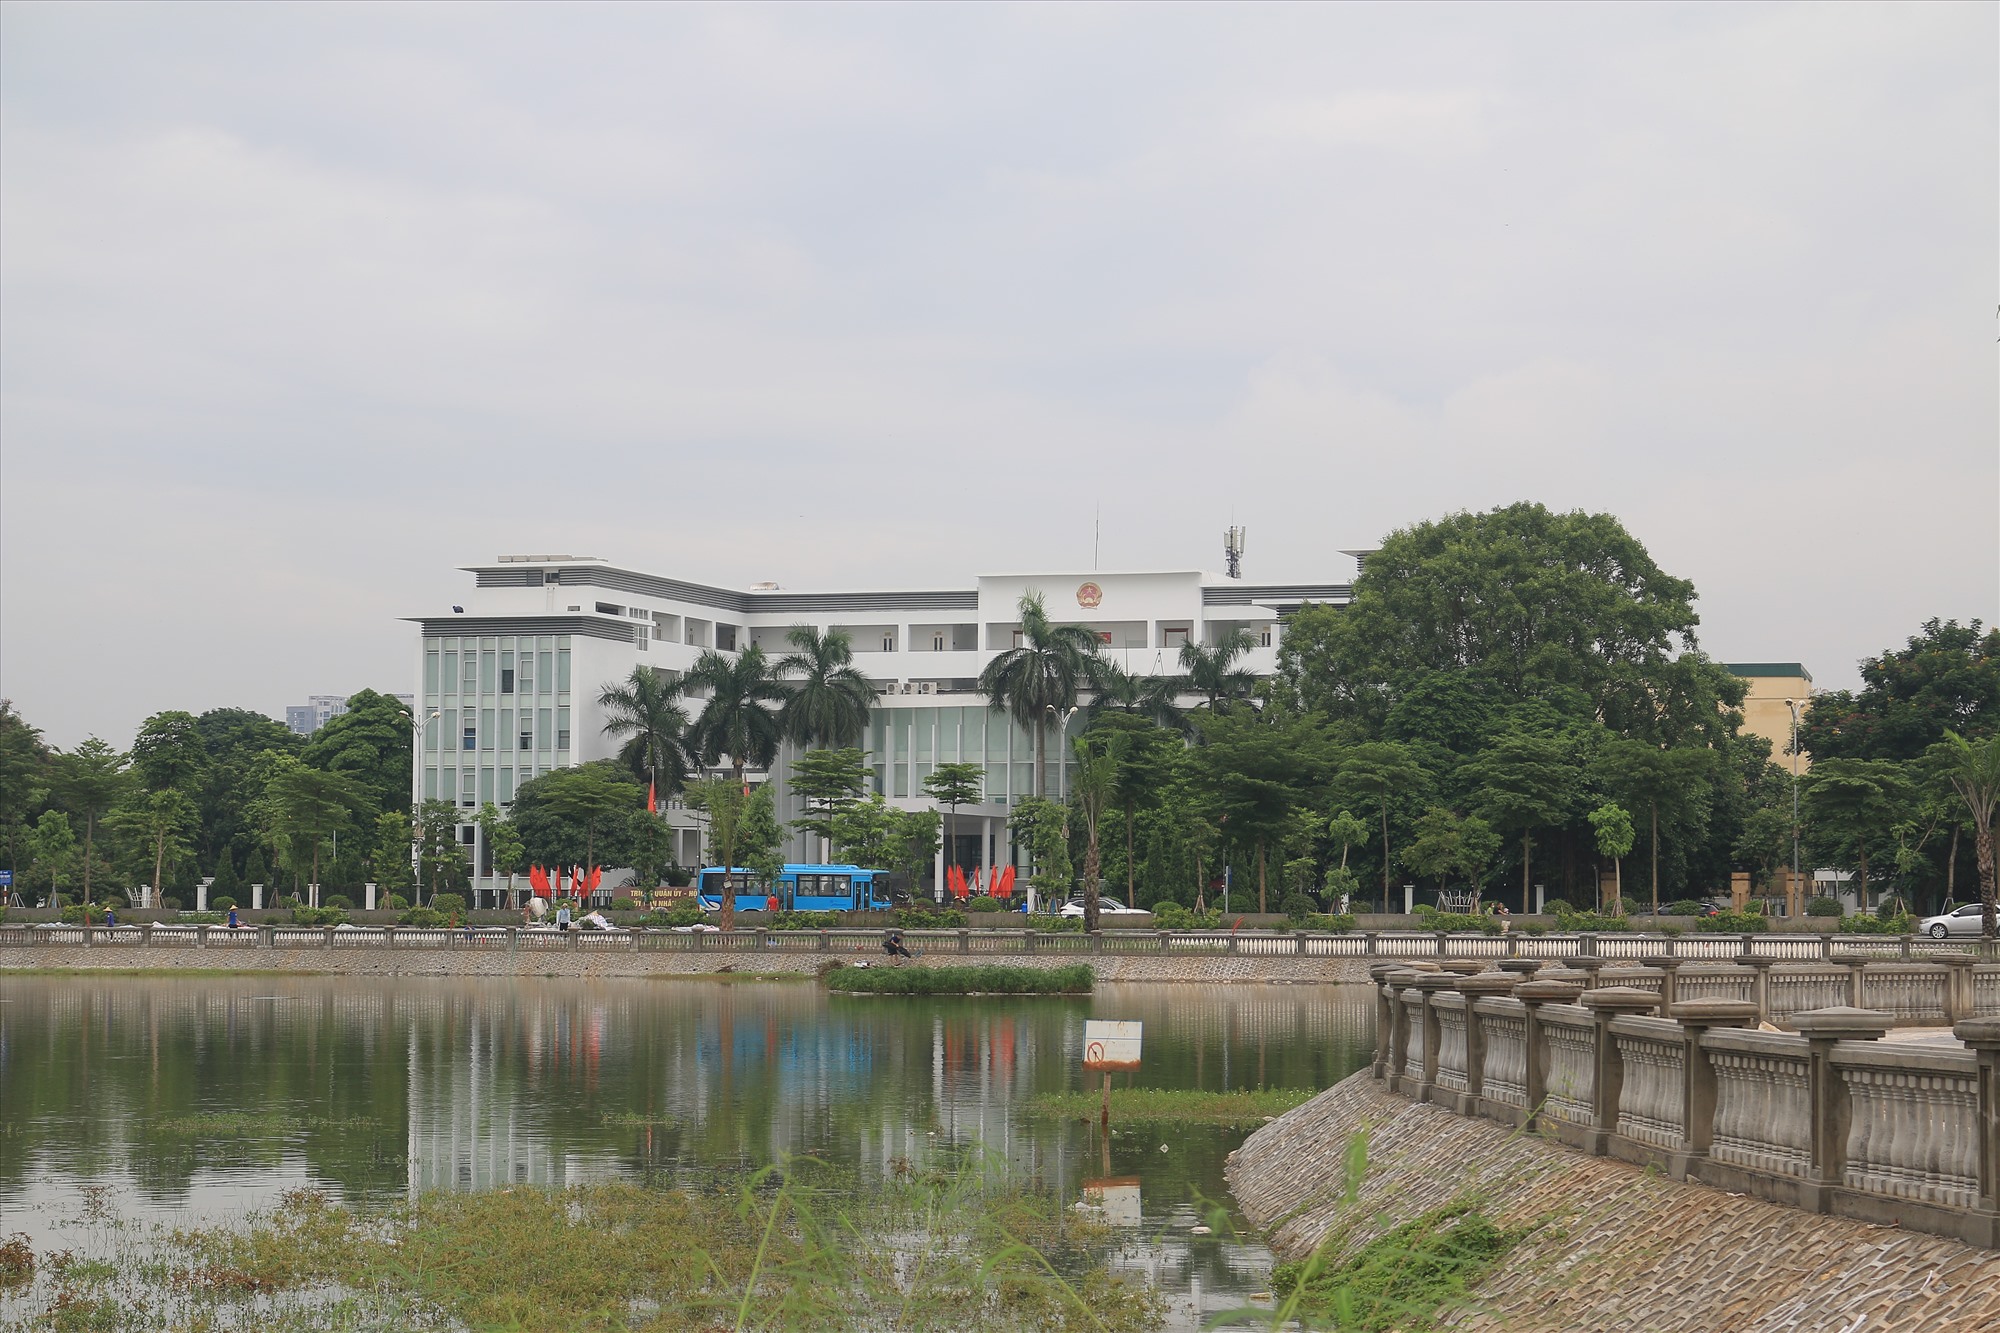 Công viên Khu đô thị Việt Hưng, quận Long Biên nằm trên phố Đoàn Khuê - Vạn Hạnh, đối diện trụ sở Quận ủy, HĐND, UBND quận Long Biên với diện tích hơn 157.000 m2. 